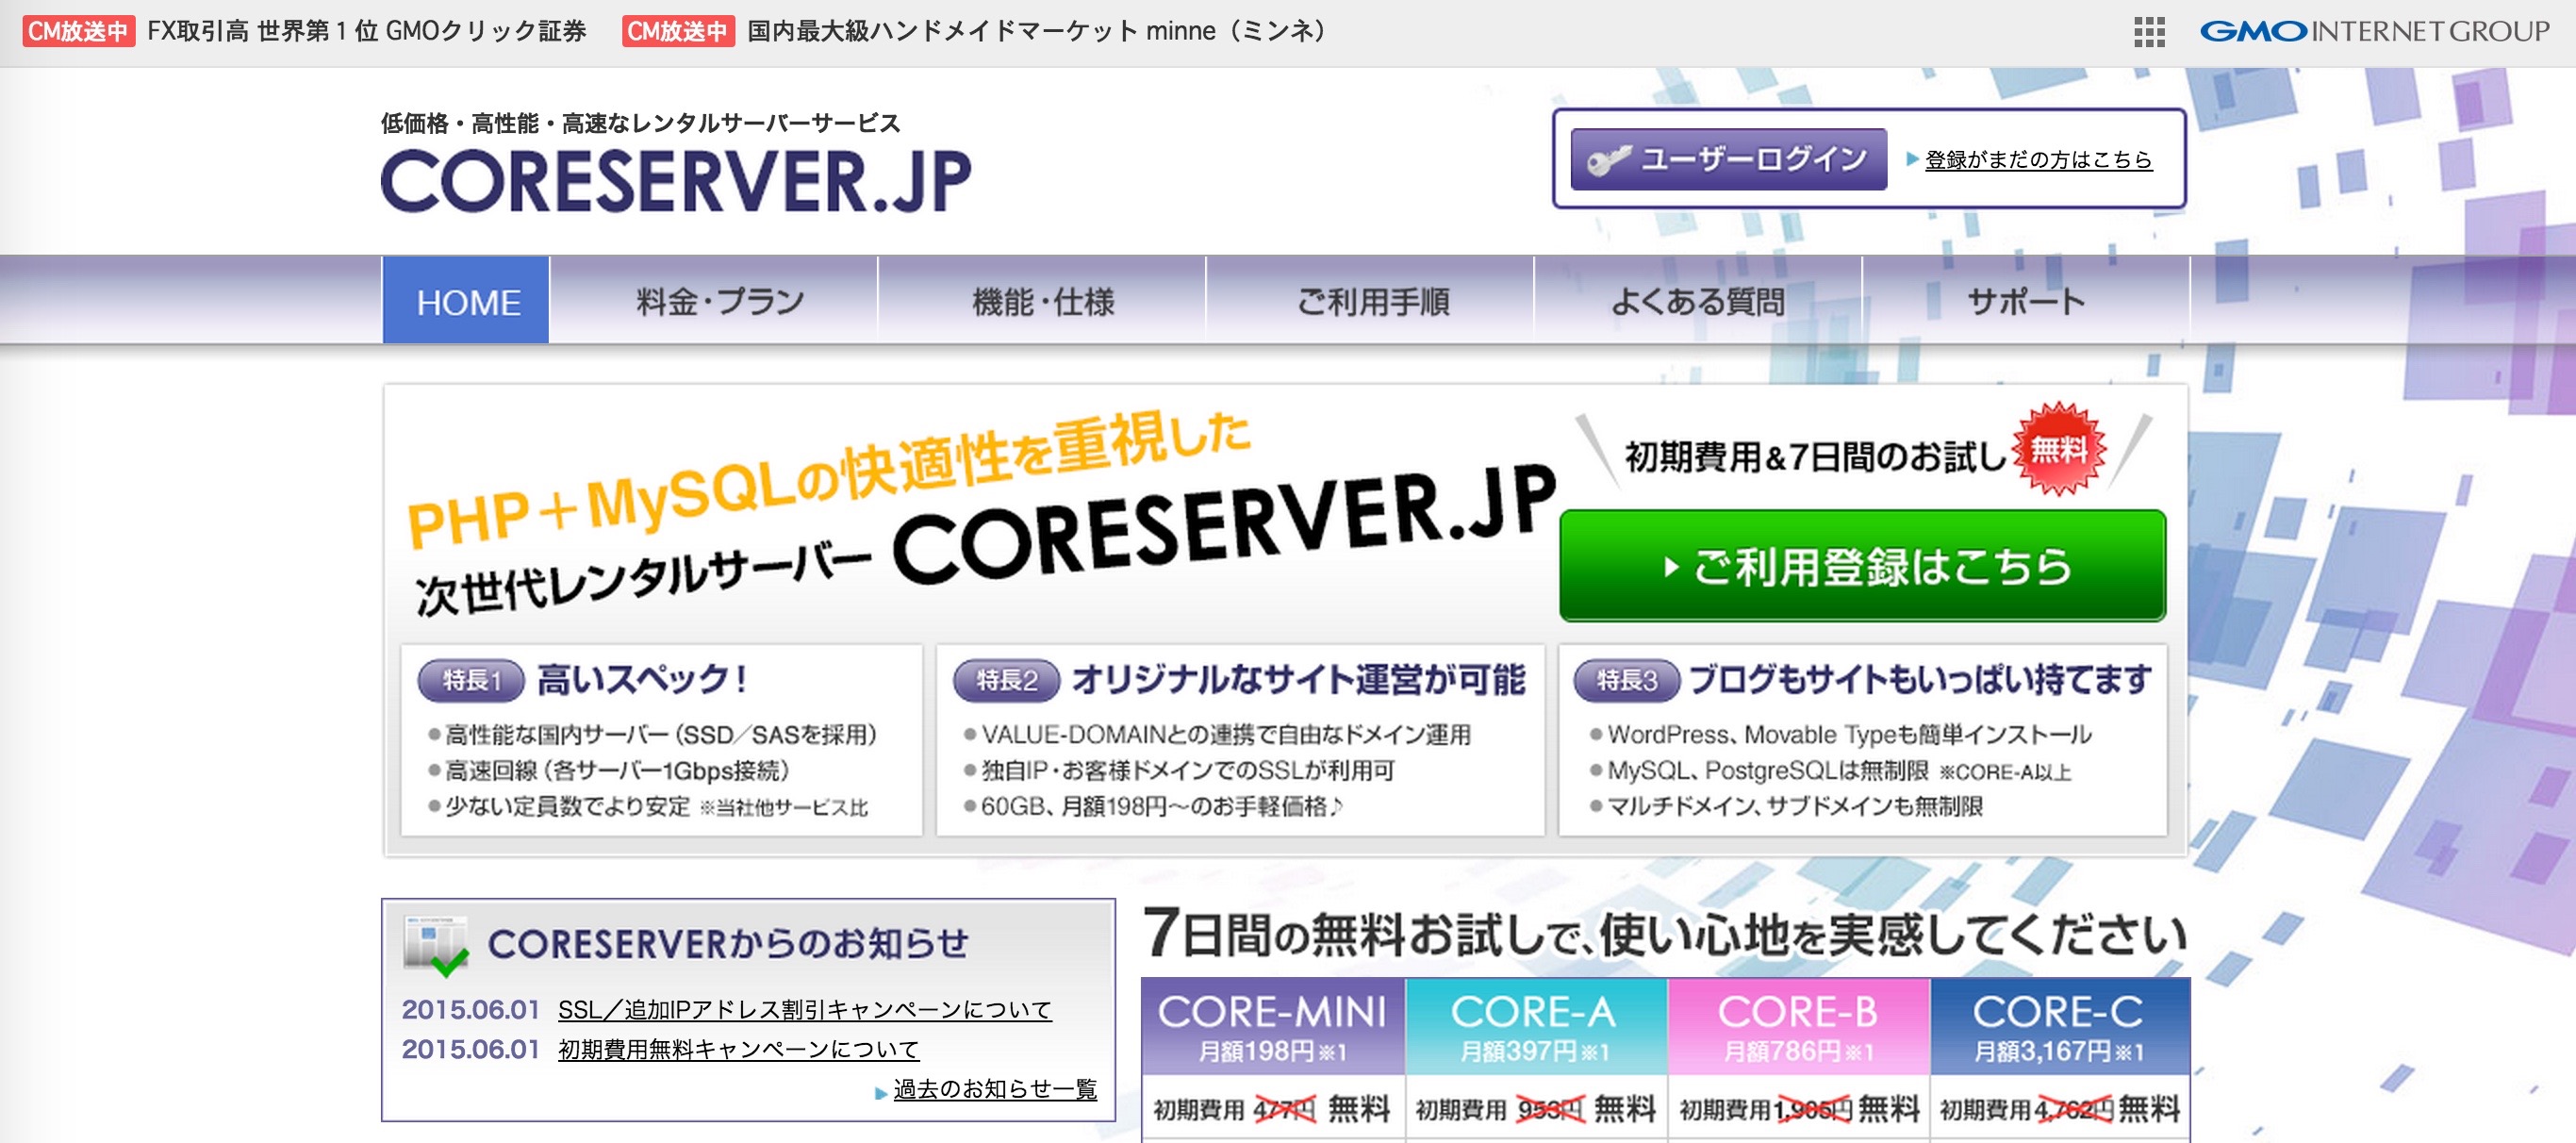 CORESERVER_JP：コアサーバー_初期費用無料のレンタルサーバー